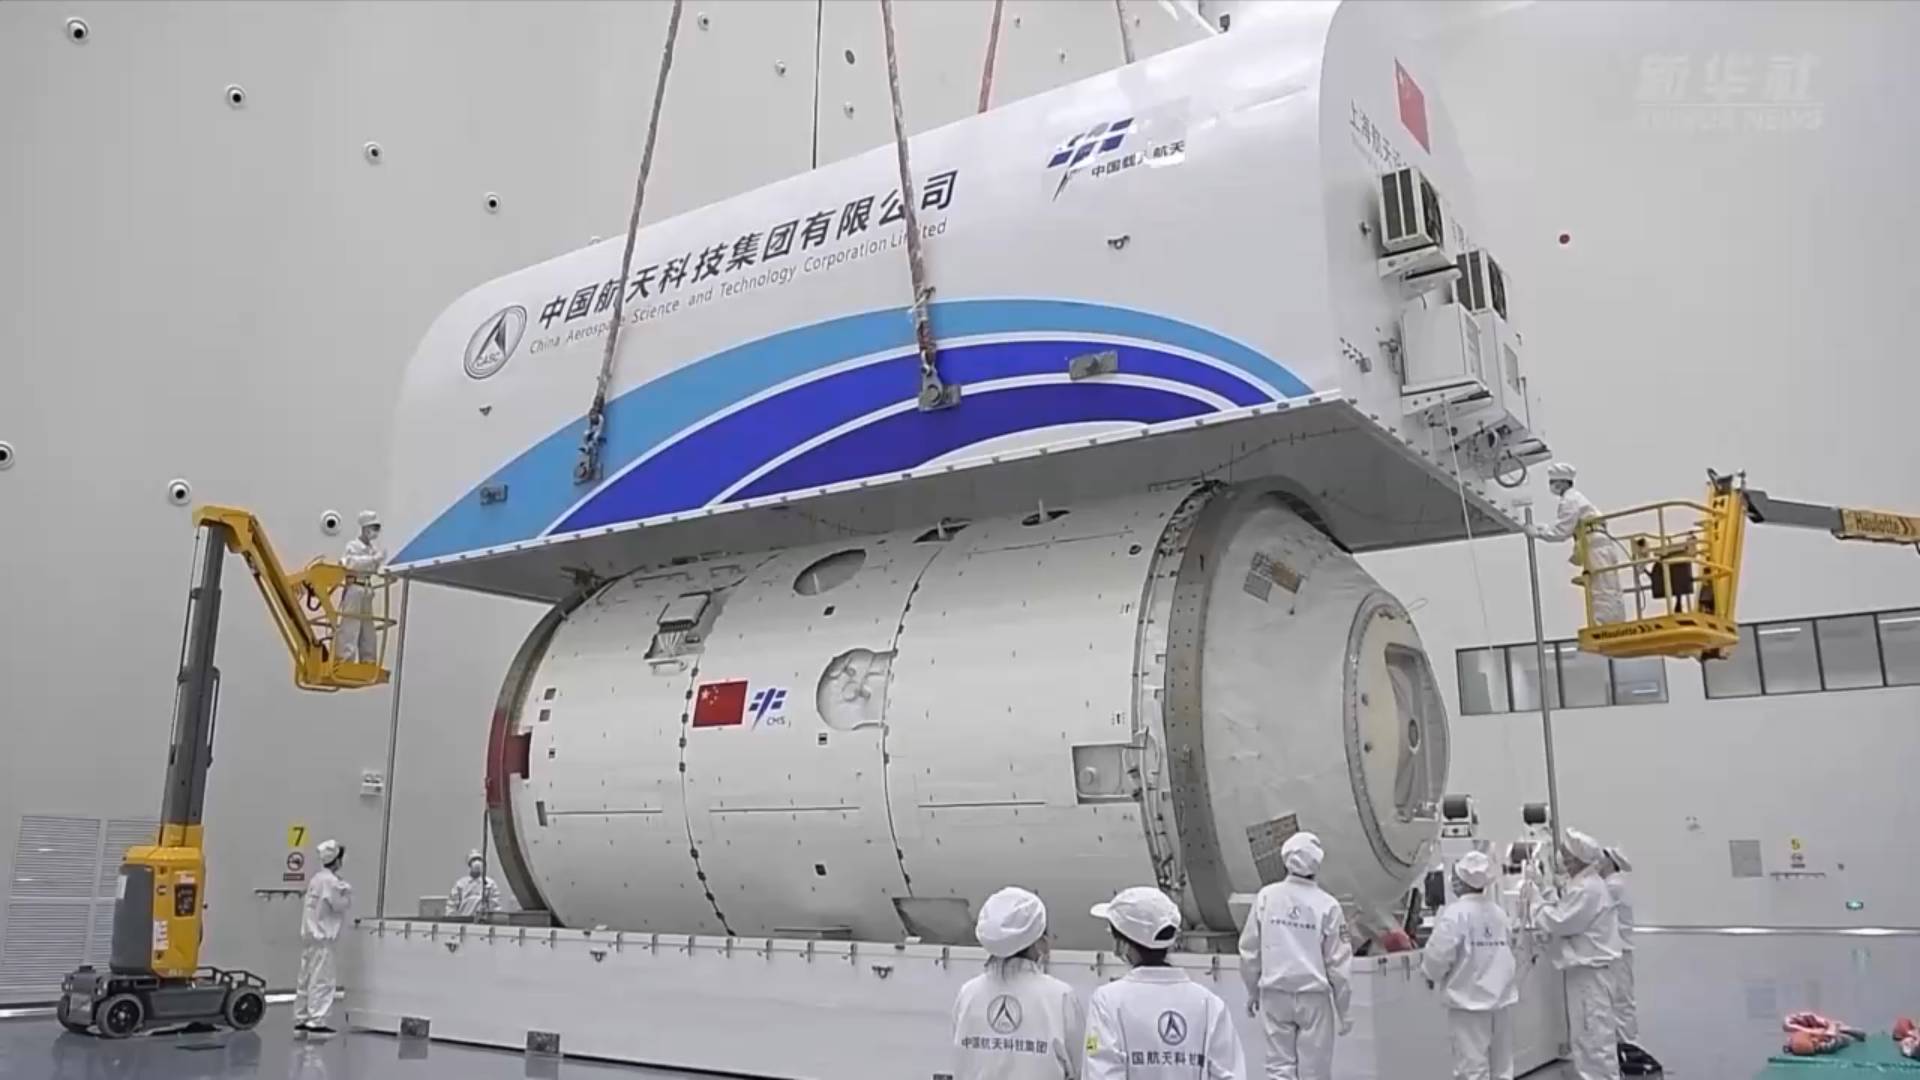 ส่องโมดูล 'เมิ่งเทียน' แห่งสถานีอวกาศจีนใน 60 วินาที